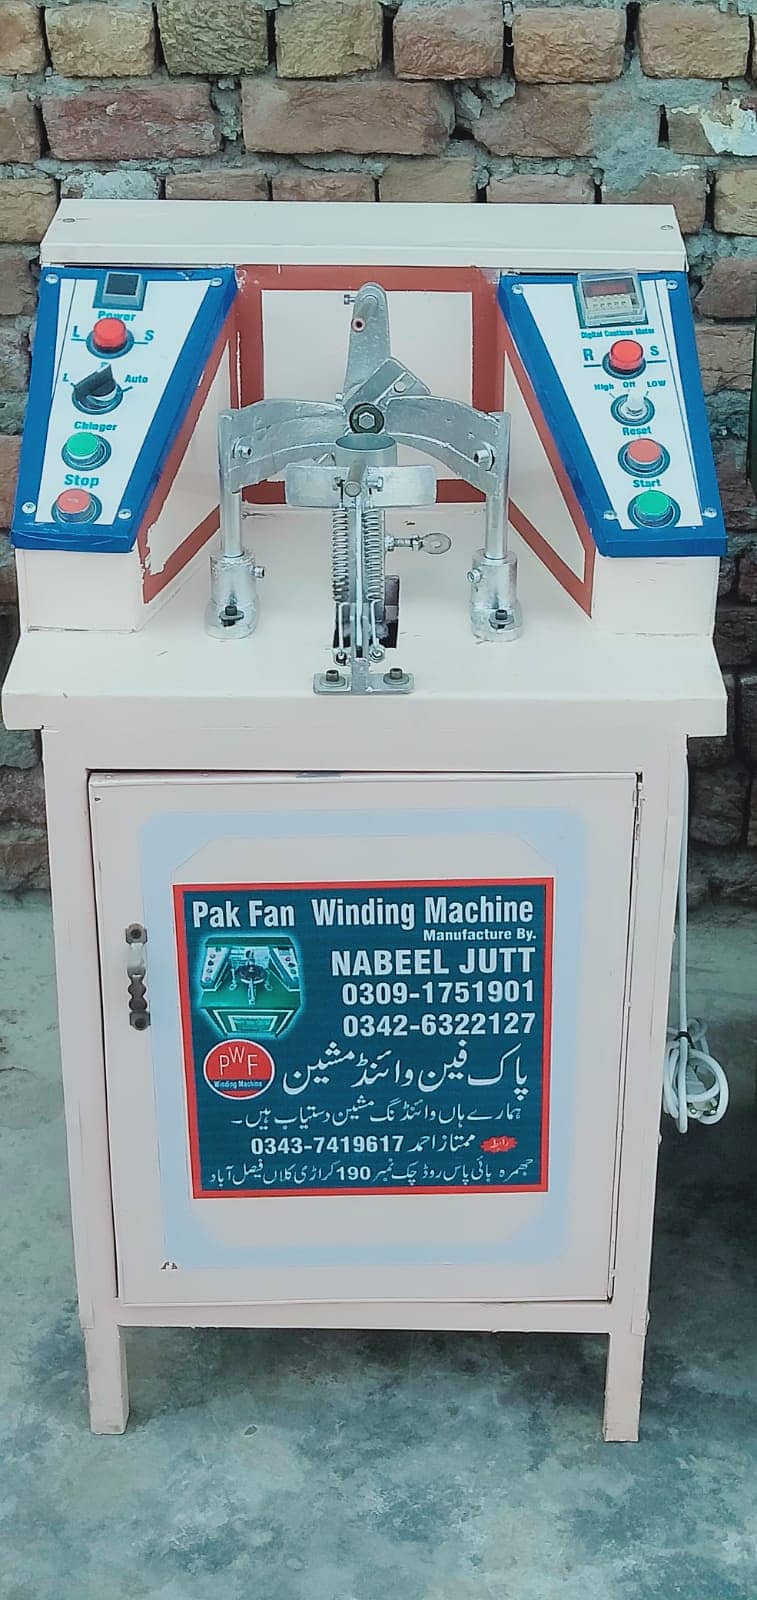 Ceiling Fan Winding Machine | Auto Fan Winding Machine|Pak Fan winding 11